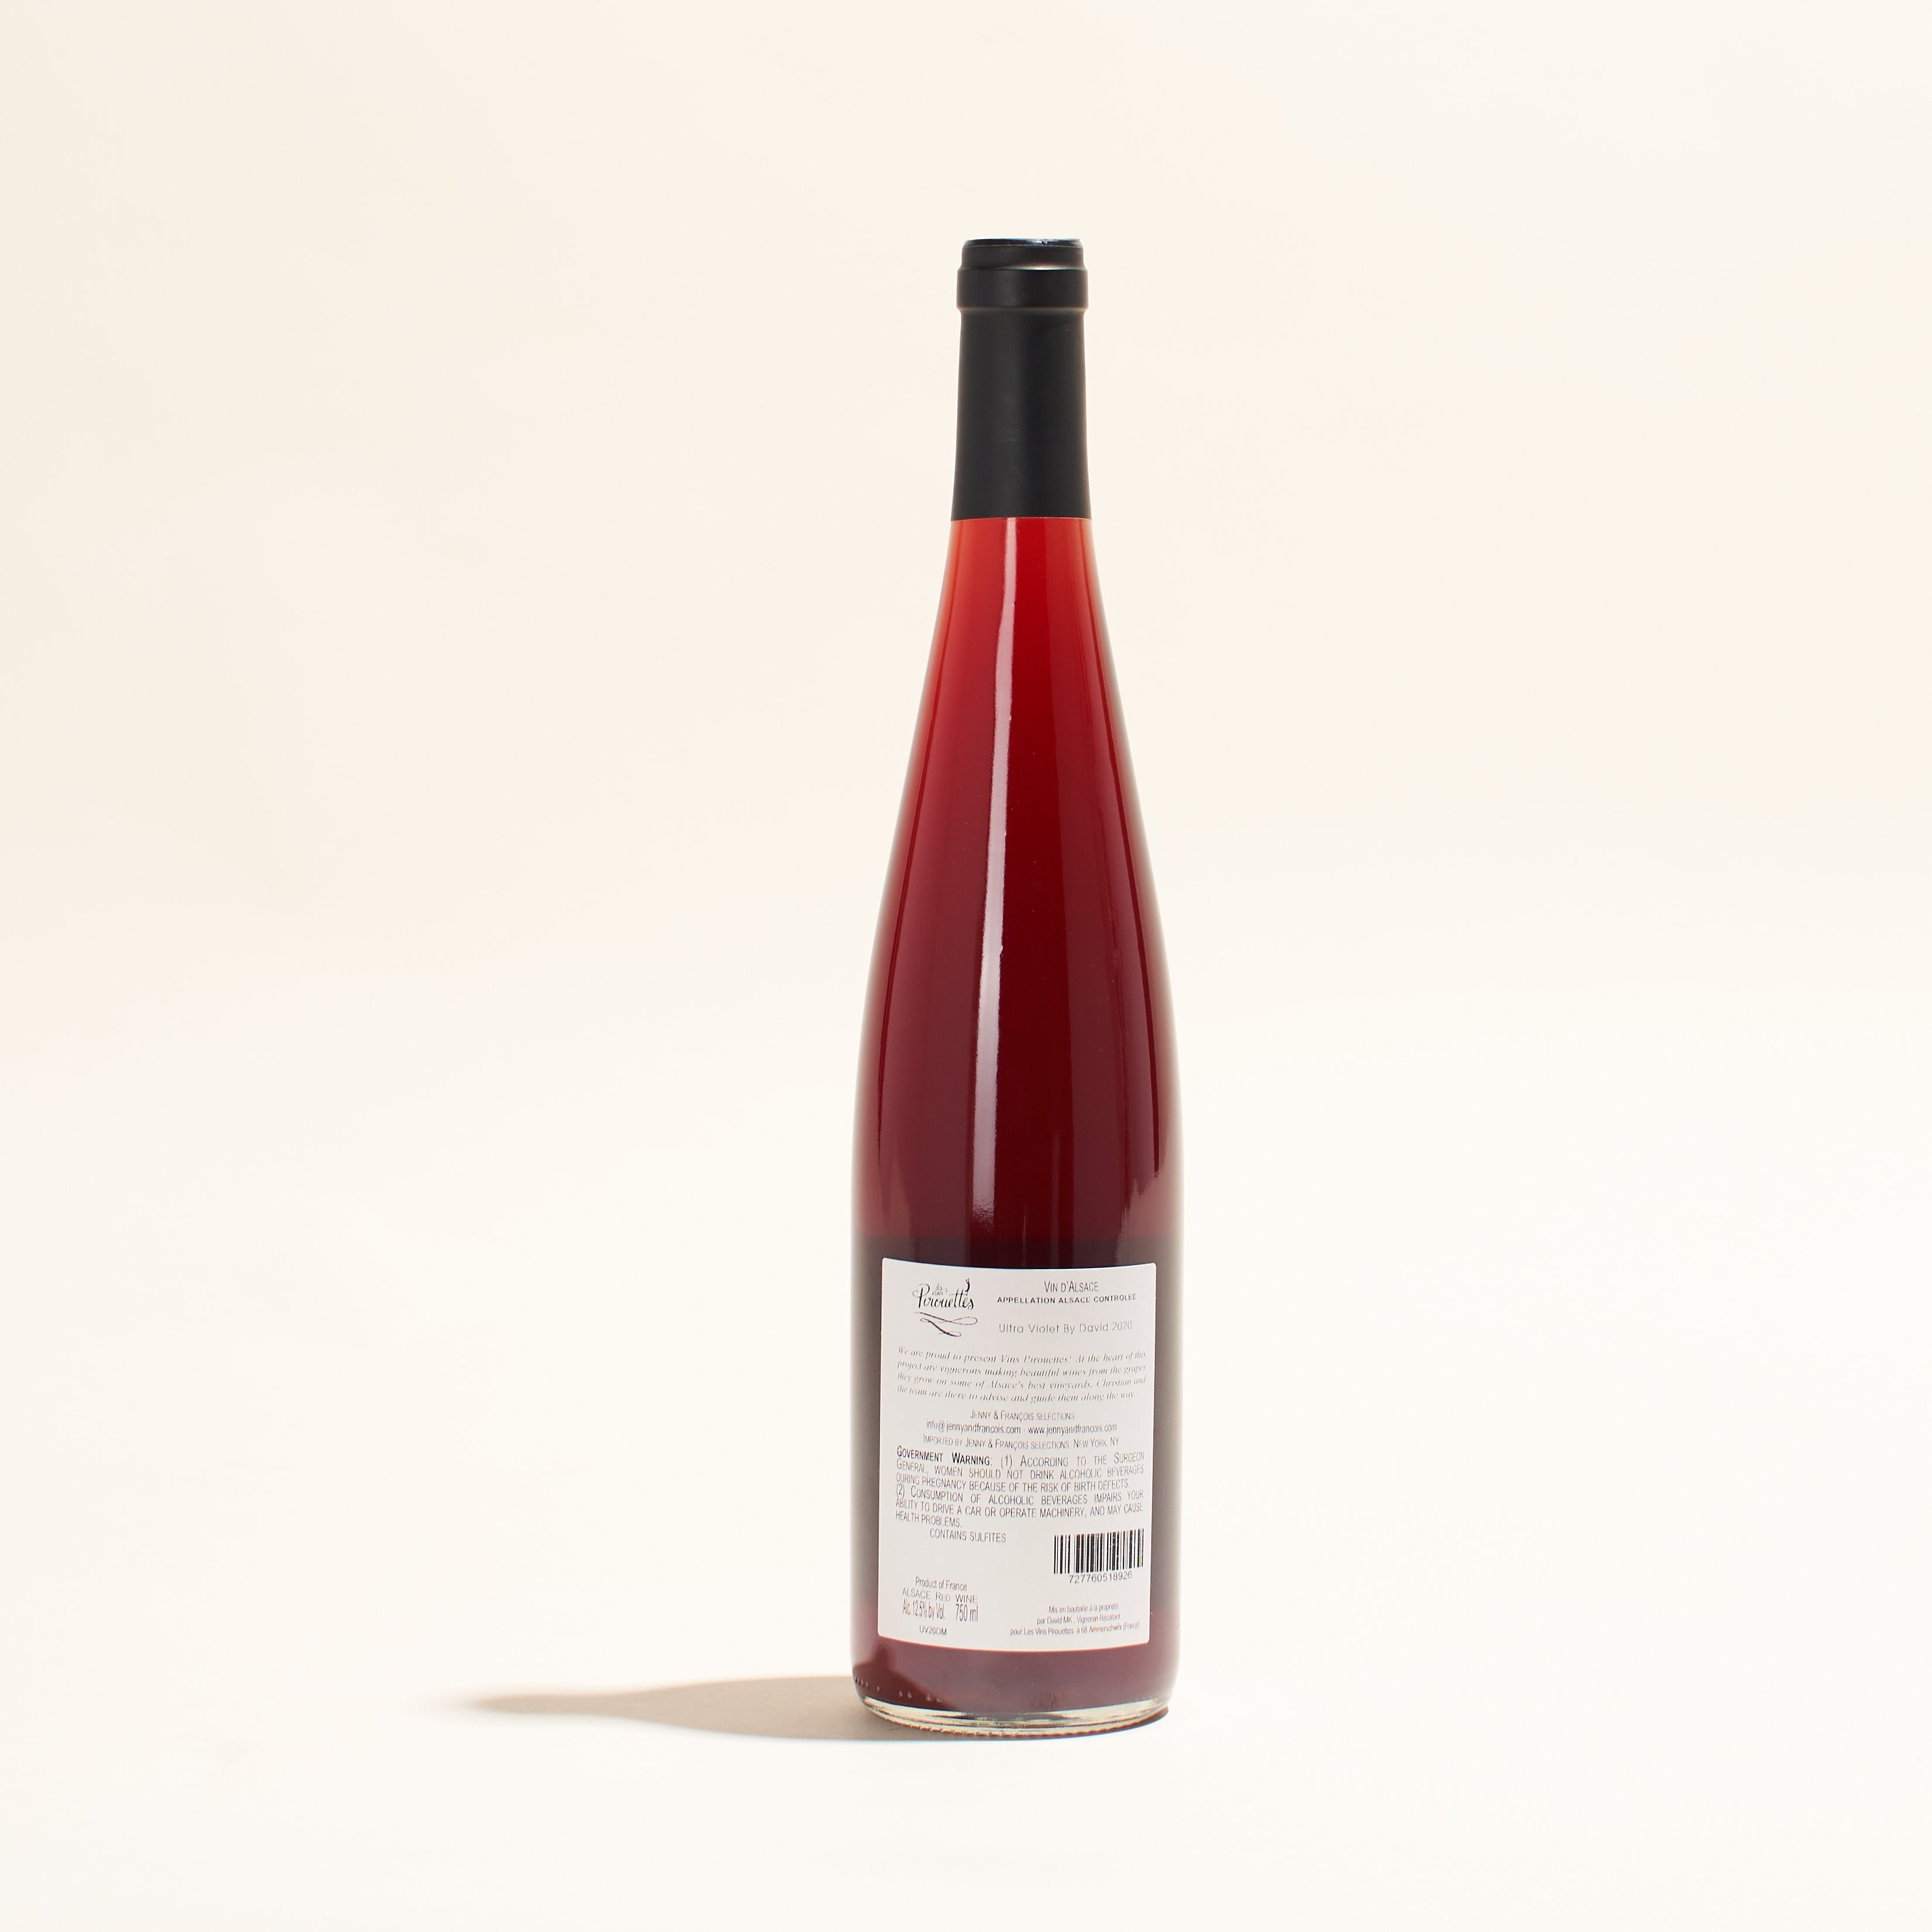 ultra violet de david les vins pirouettes natural red wine alsace france back label